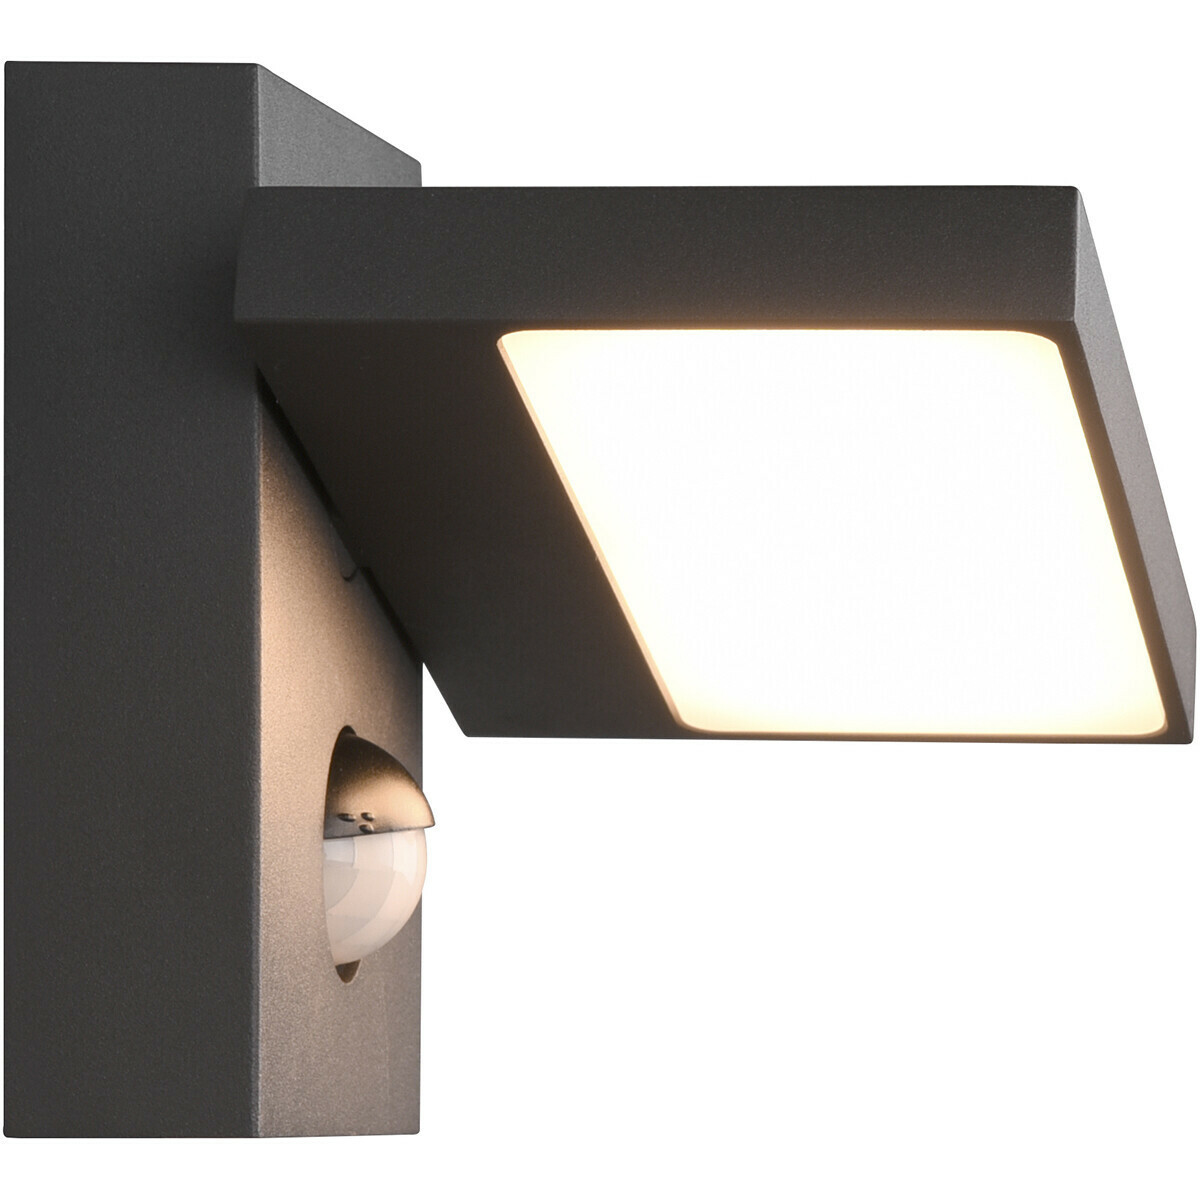 LED Gartenbeleuchtung mit Bewegungsmelder - Wand-Außenleuchte - Trion Ihson  - 8W - Warmweiß 3000K - Drehbar - Quadrat - Mattanthrazit - Aluminium | BES  LED | Wandleuchten